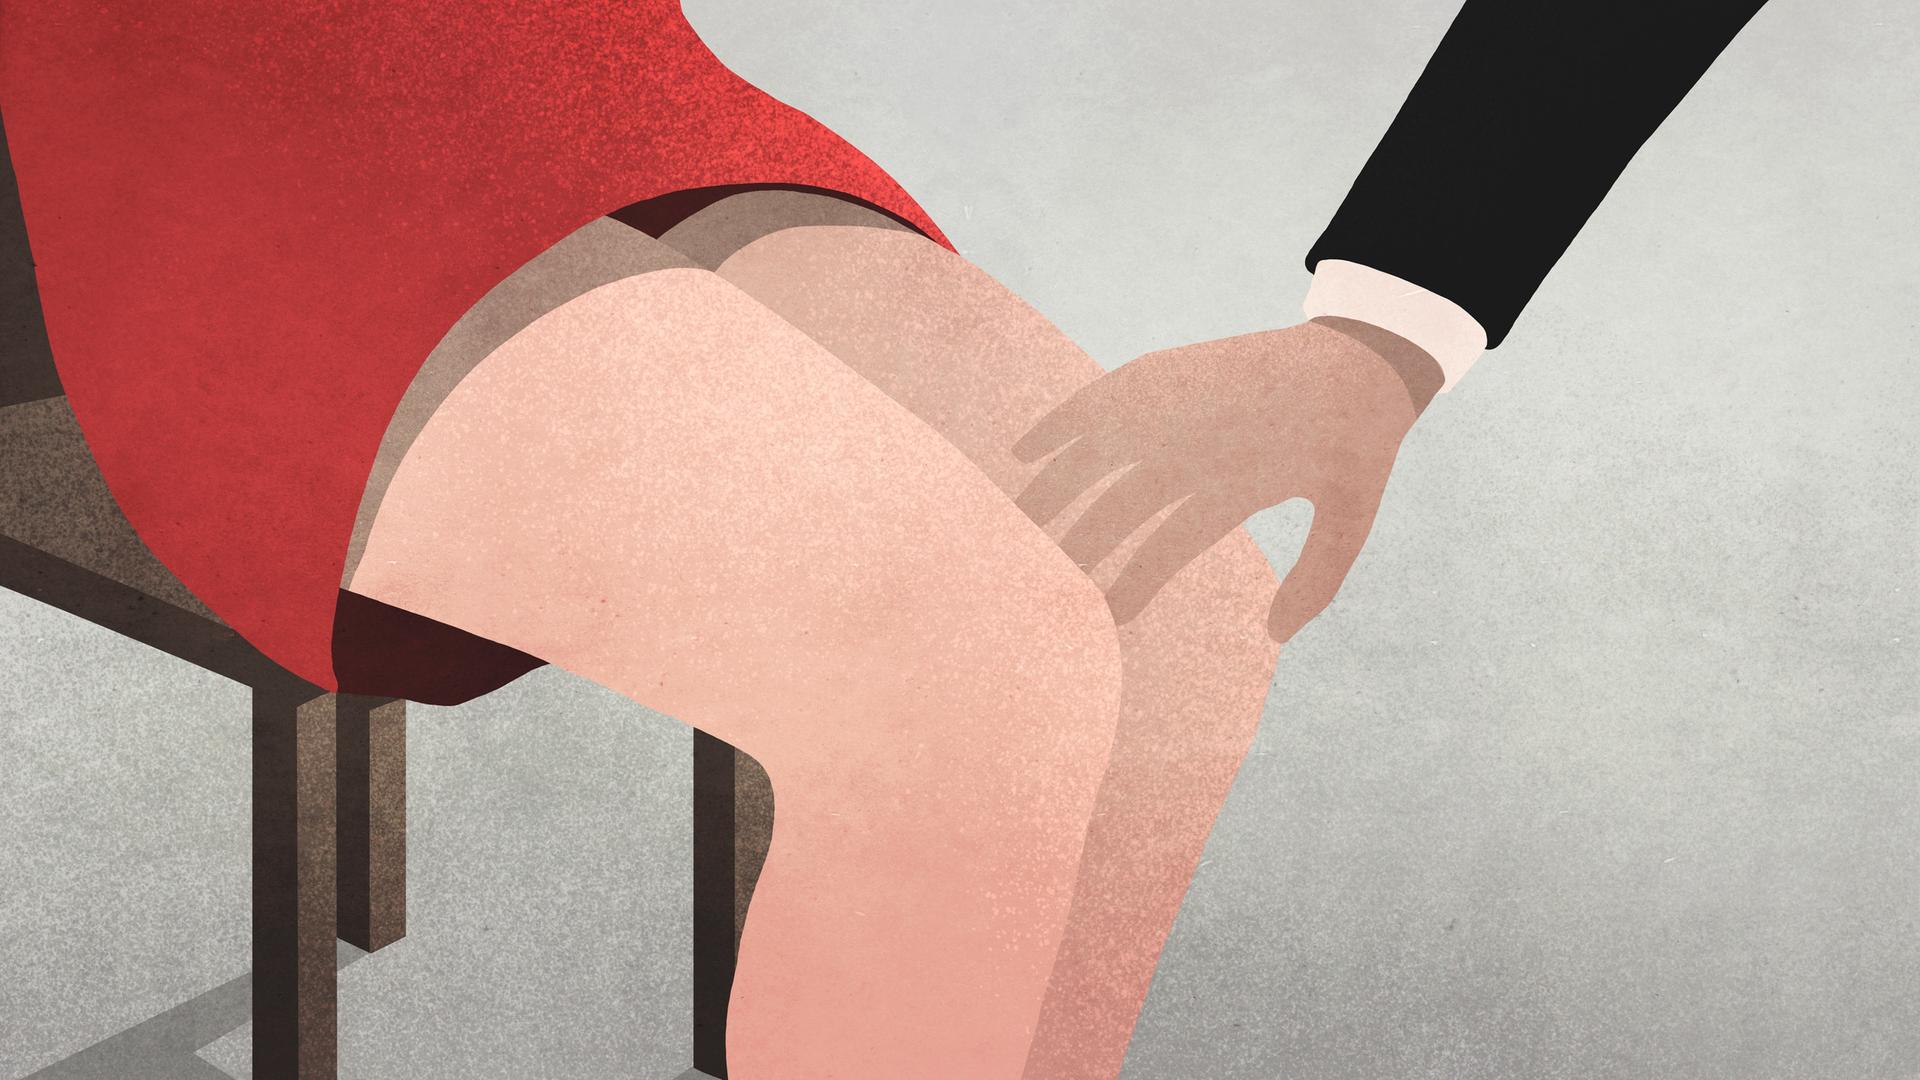 Auf einer Illustration berührt eine männliche Hand ein weibliches Knie - Symbolbild für sexuelle Belästigung.